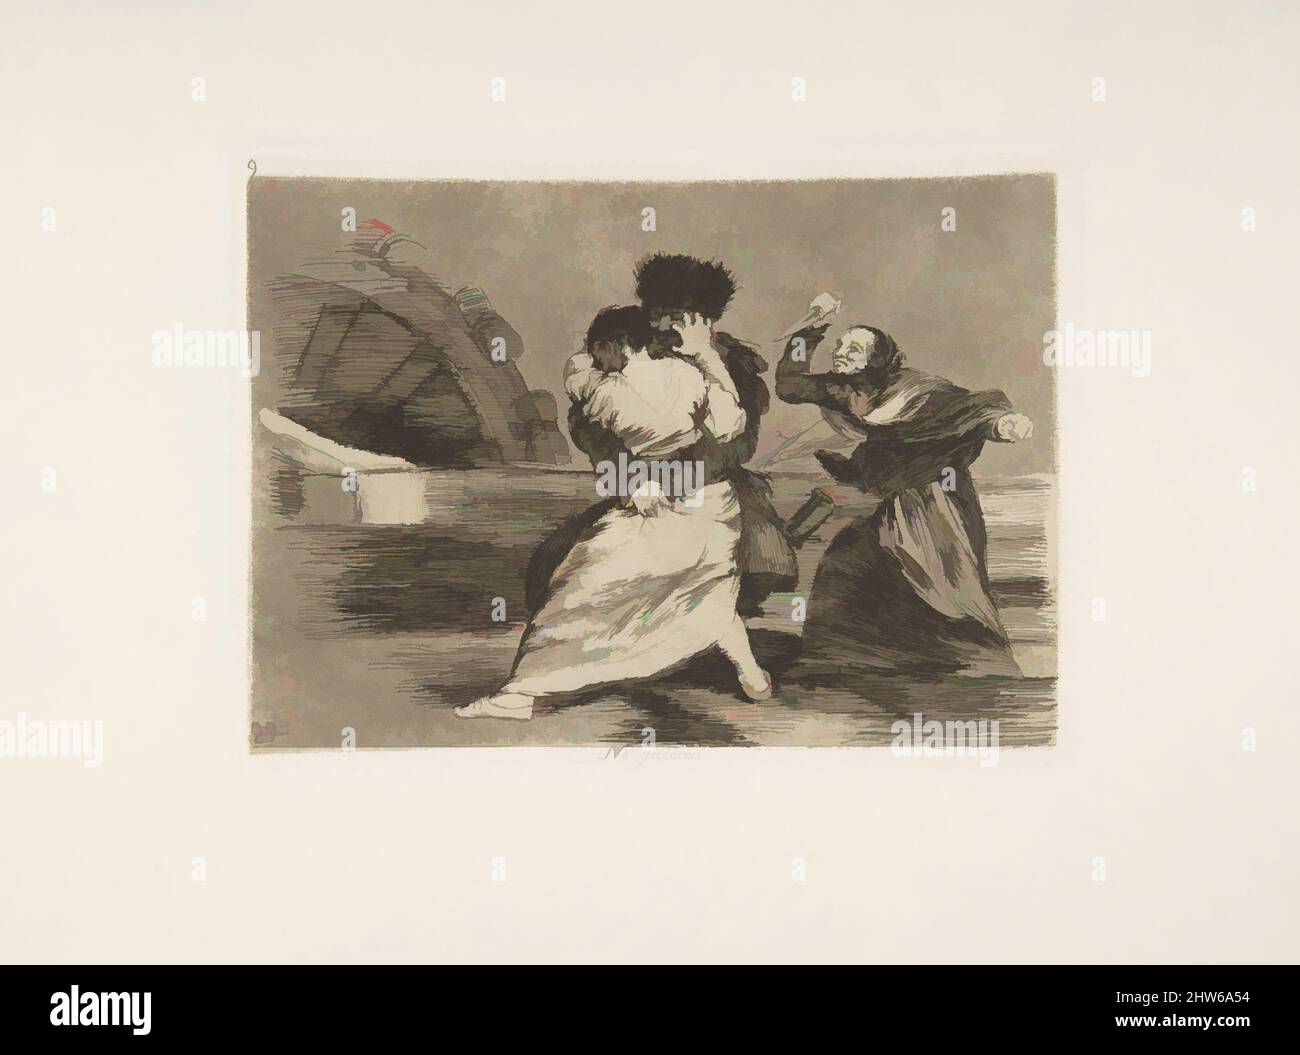 Art inspiré par la planche 9 de 'les désastres de la guerre' (Los Desastres de la Guerra):ils n'aiment pas (No quieren.), 1810 (publié en 1863), Etching, burnished aquatint, drypoint, burin et burnisher, plaque : 6 1/8 × 8 3/16 in. (15,5 × 20,8 cm), Prints, Goya (Francisco de Goya y Lucientes, oeuvres classiques modernisées par Artotop avec une touche de modernité. Formes, couleur et valeur, impact visuel accrocheur sur l'art émotions par la liberté d'œuvres d'art d'une manière contemporaine. Un message intemporel qui cherche une nouvelle direction créative. Artistes qui se tournent vers le support numérique et créent le NFT Artotop Banque D'Images